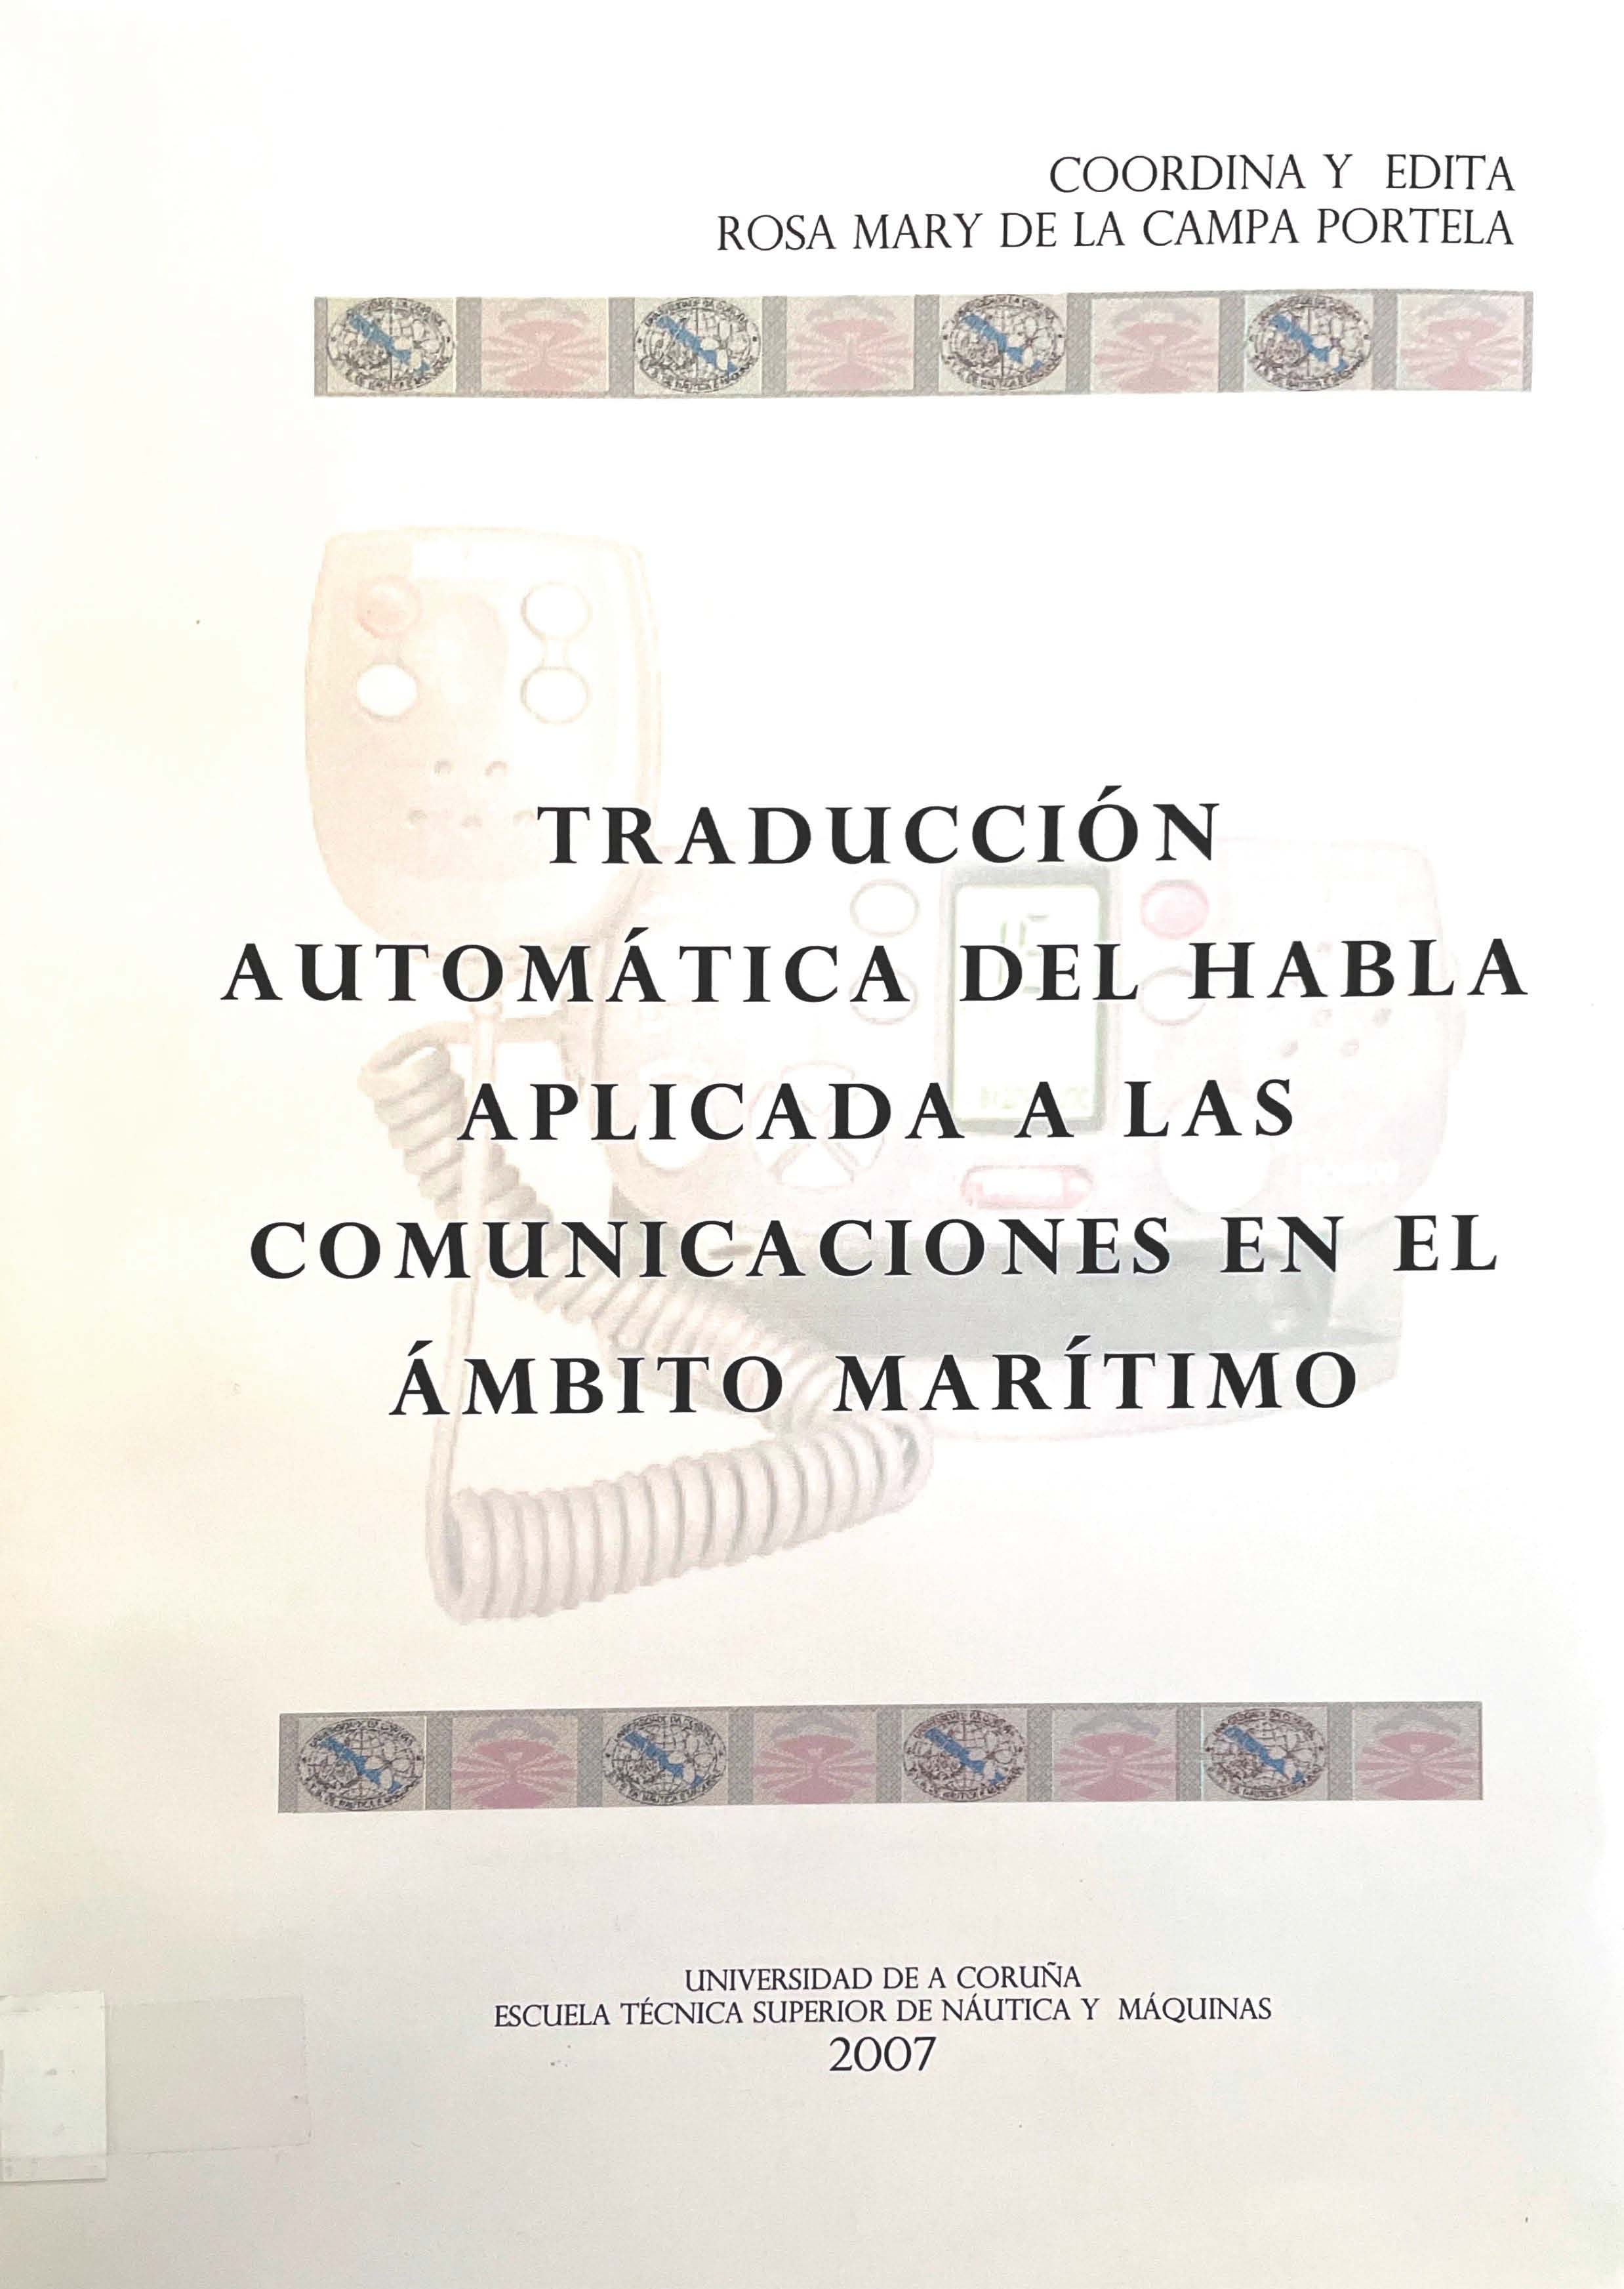 Imagen de portada del libro Traducción automática del habla aplicada a las comunicaciones en el ámbito marítimo